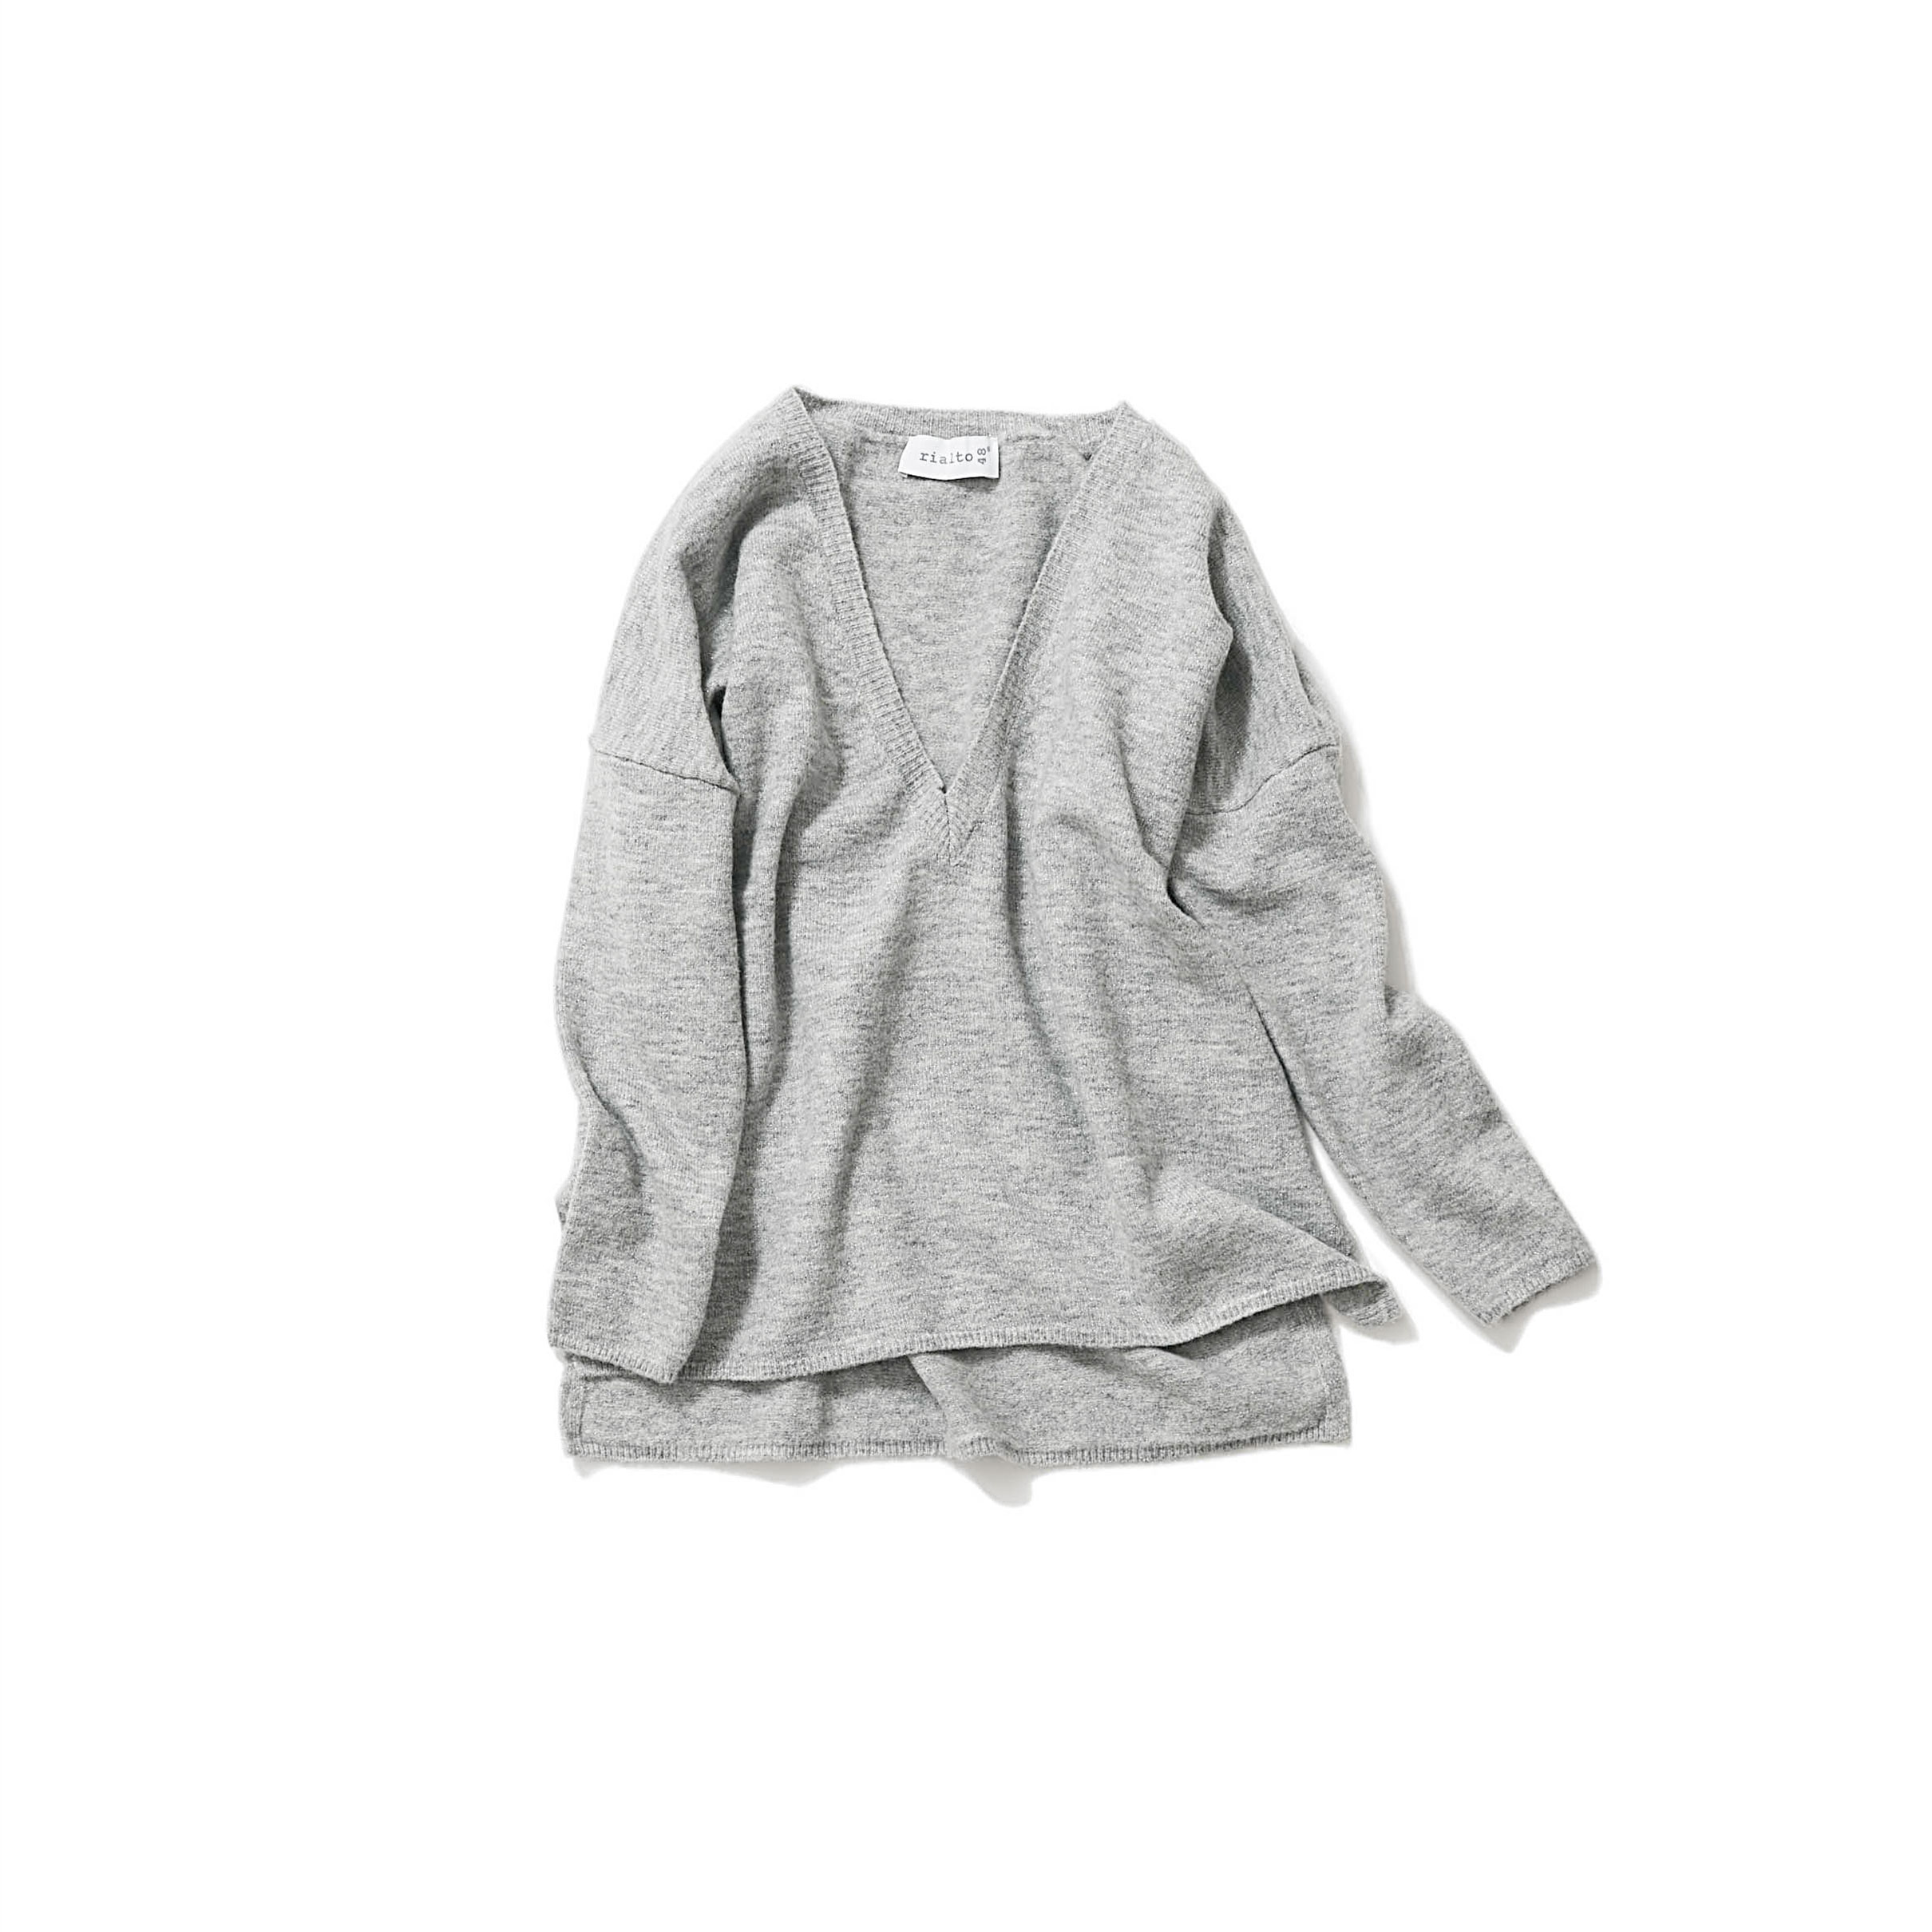 silvery gray V-neck knit